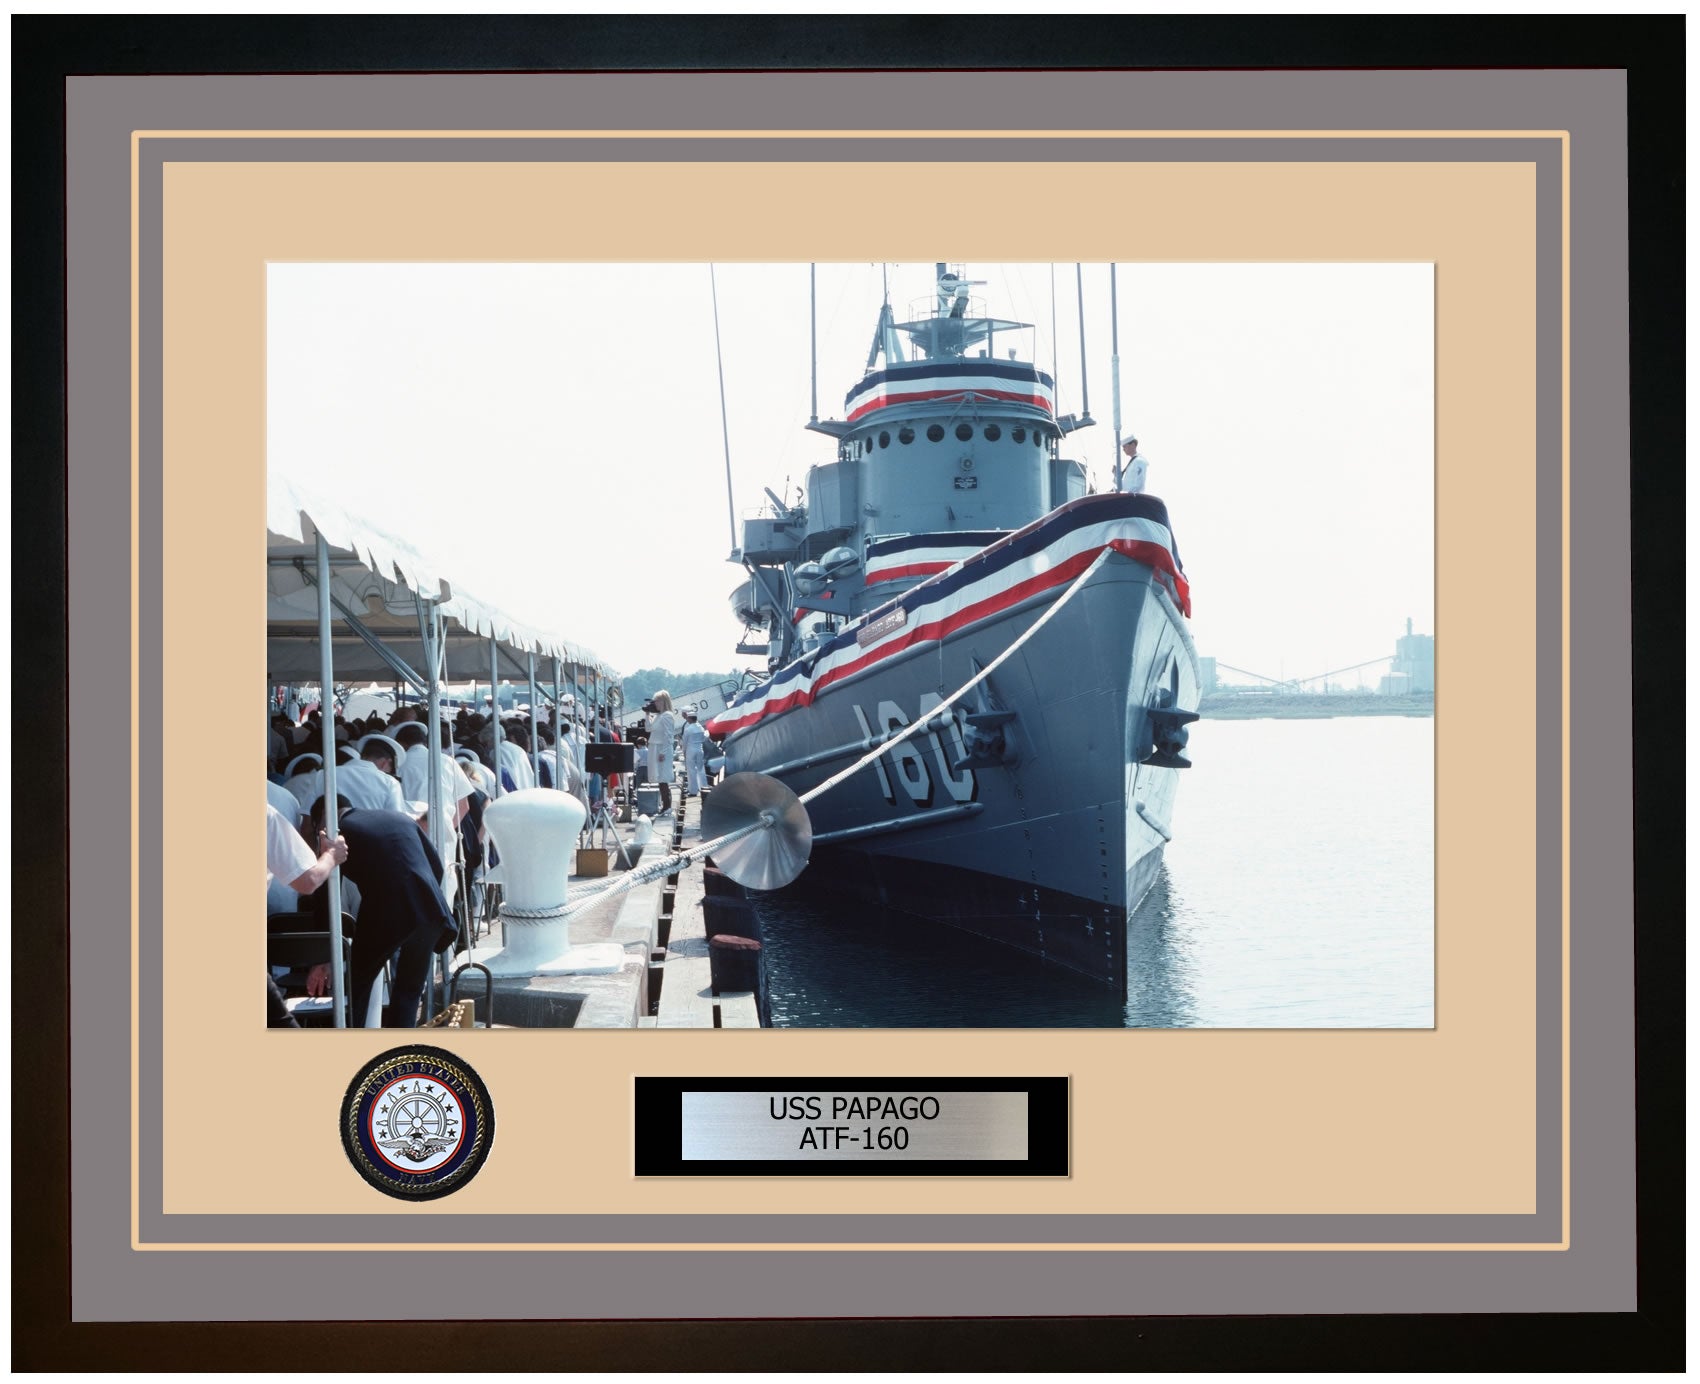 USS PAPAGO ATF-160 Framed Navy Ship Photo Grey